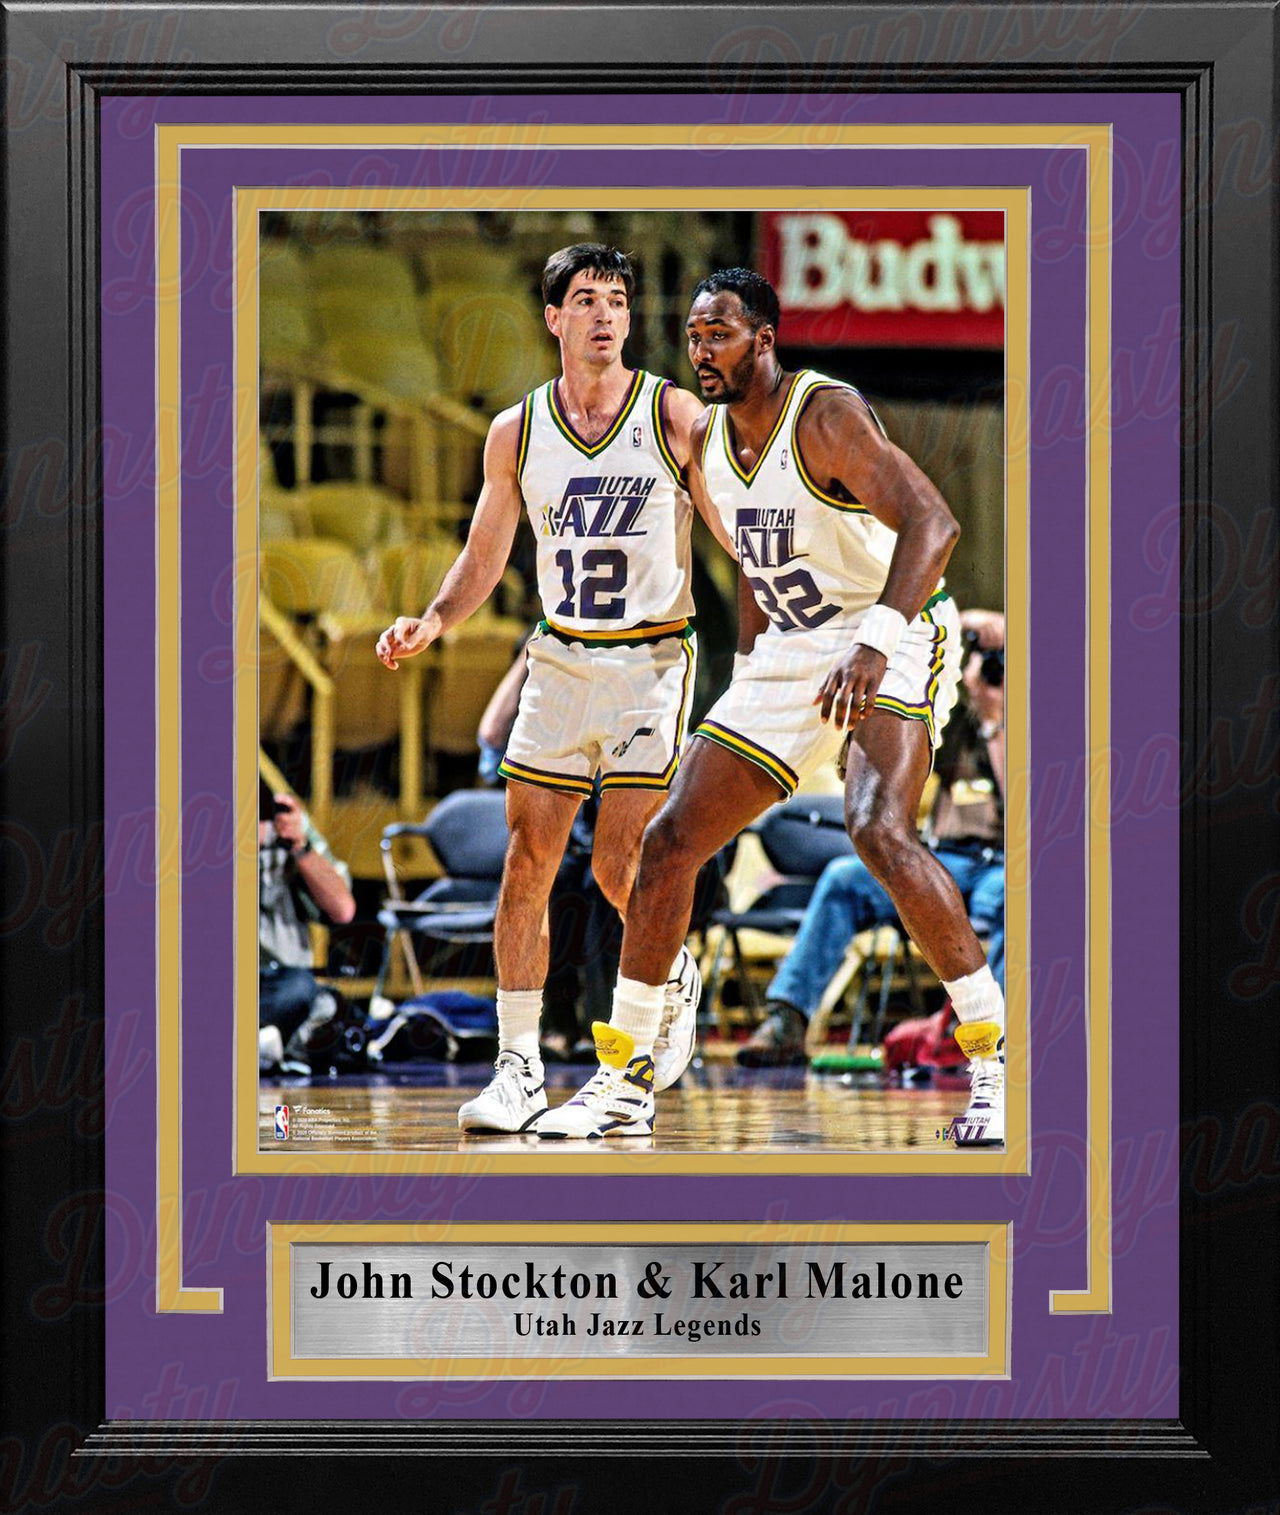 John Stockton & Karl Malone Utah Jazz 8" x 10" Framed Basketball Photo - Dynasty Sports & Framing 